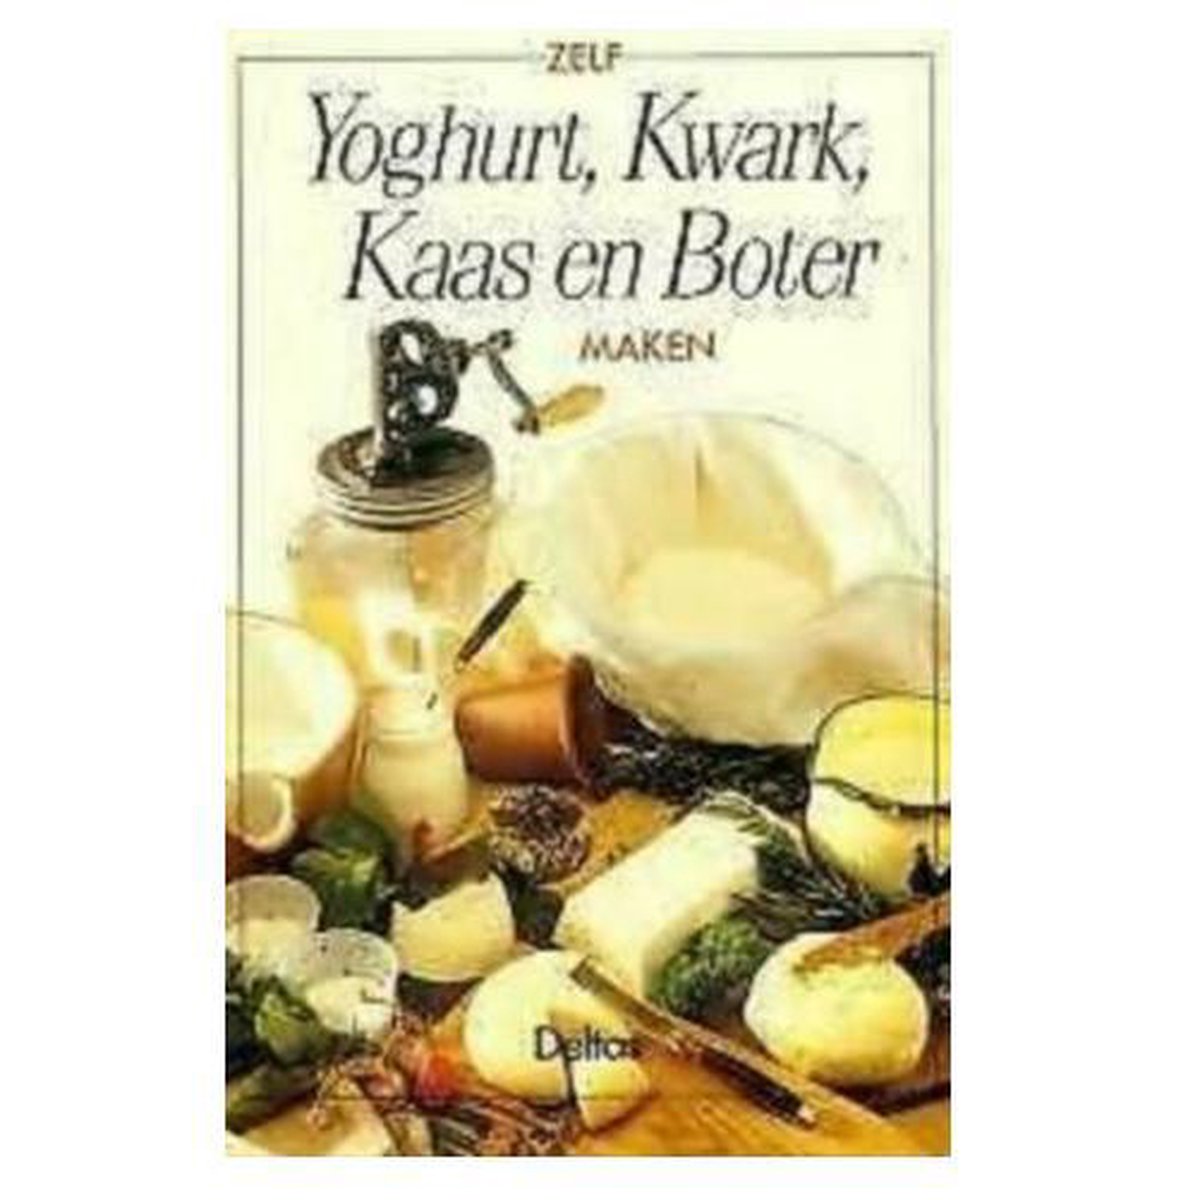 Yoghurt kwark kaas en boter